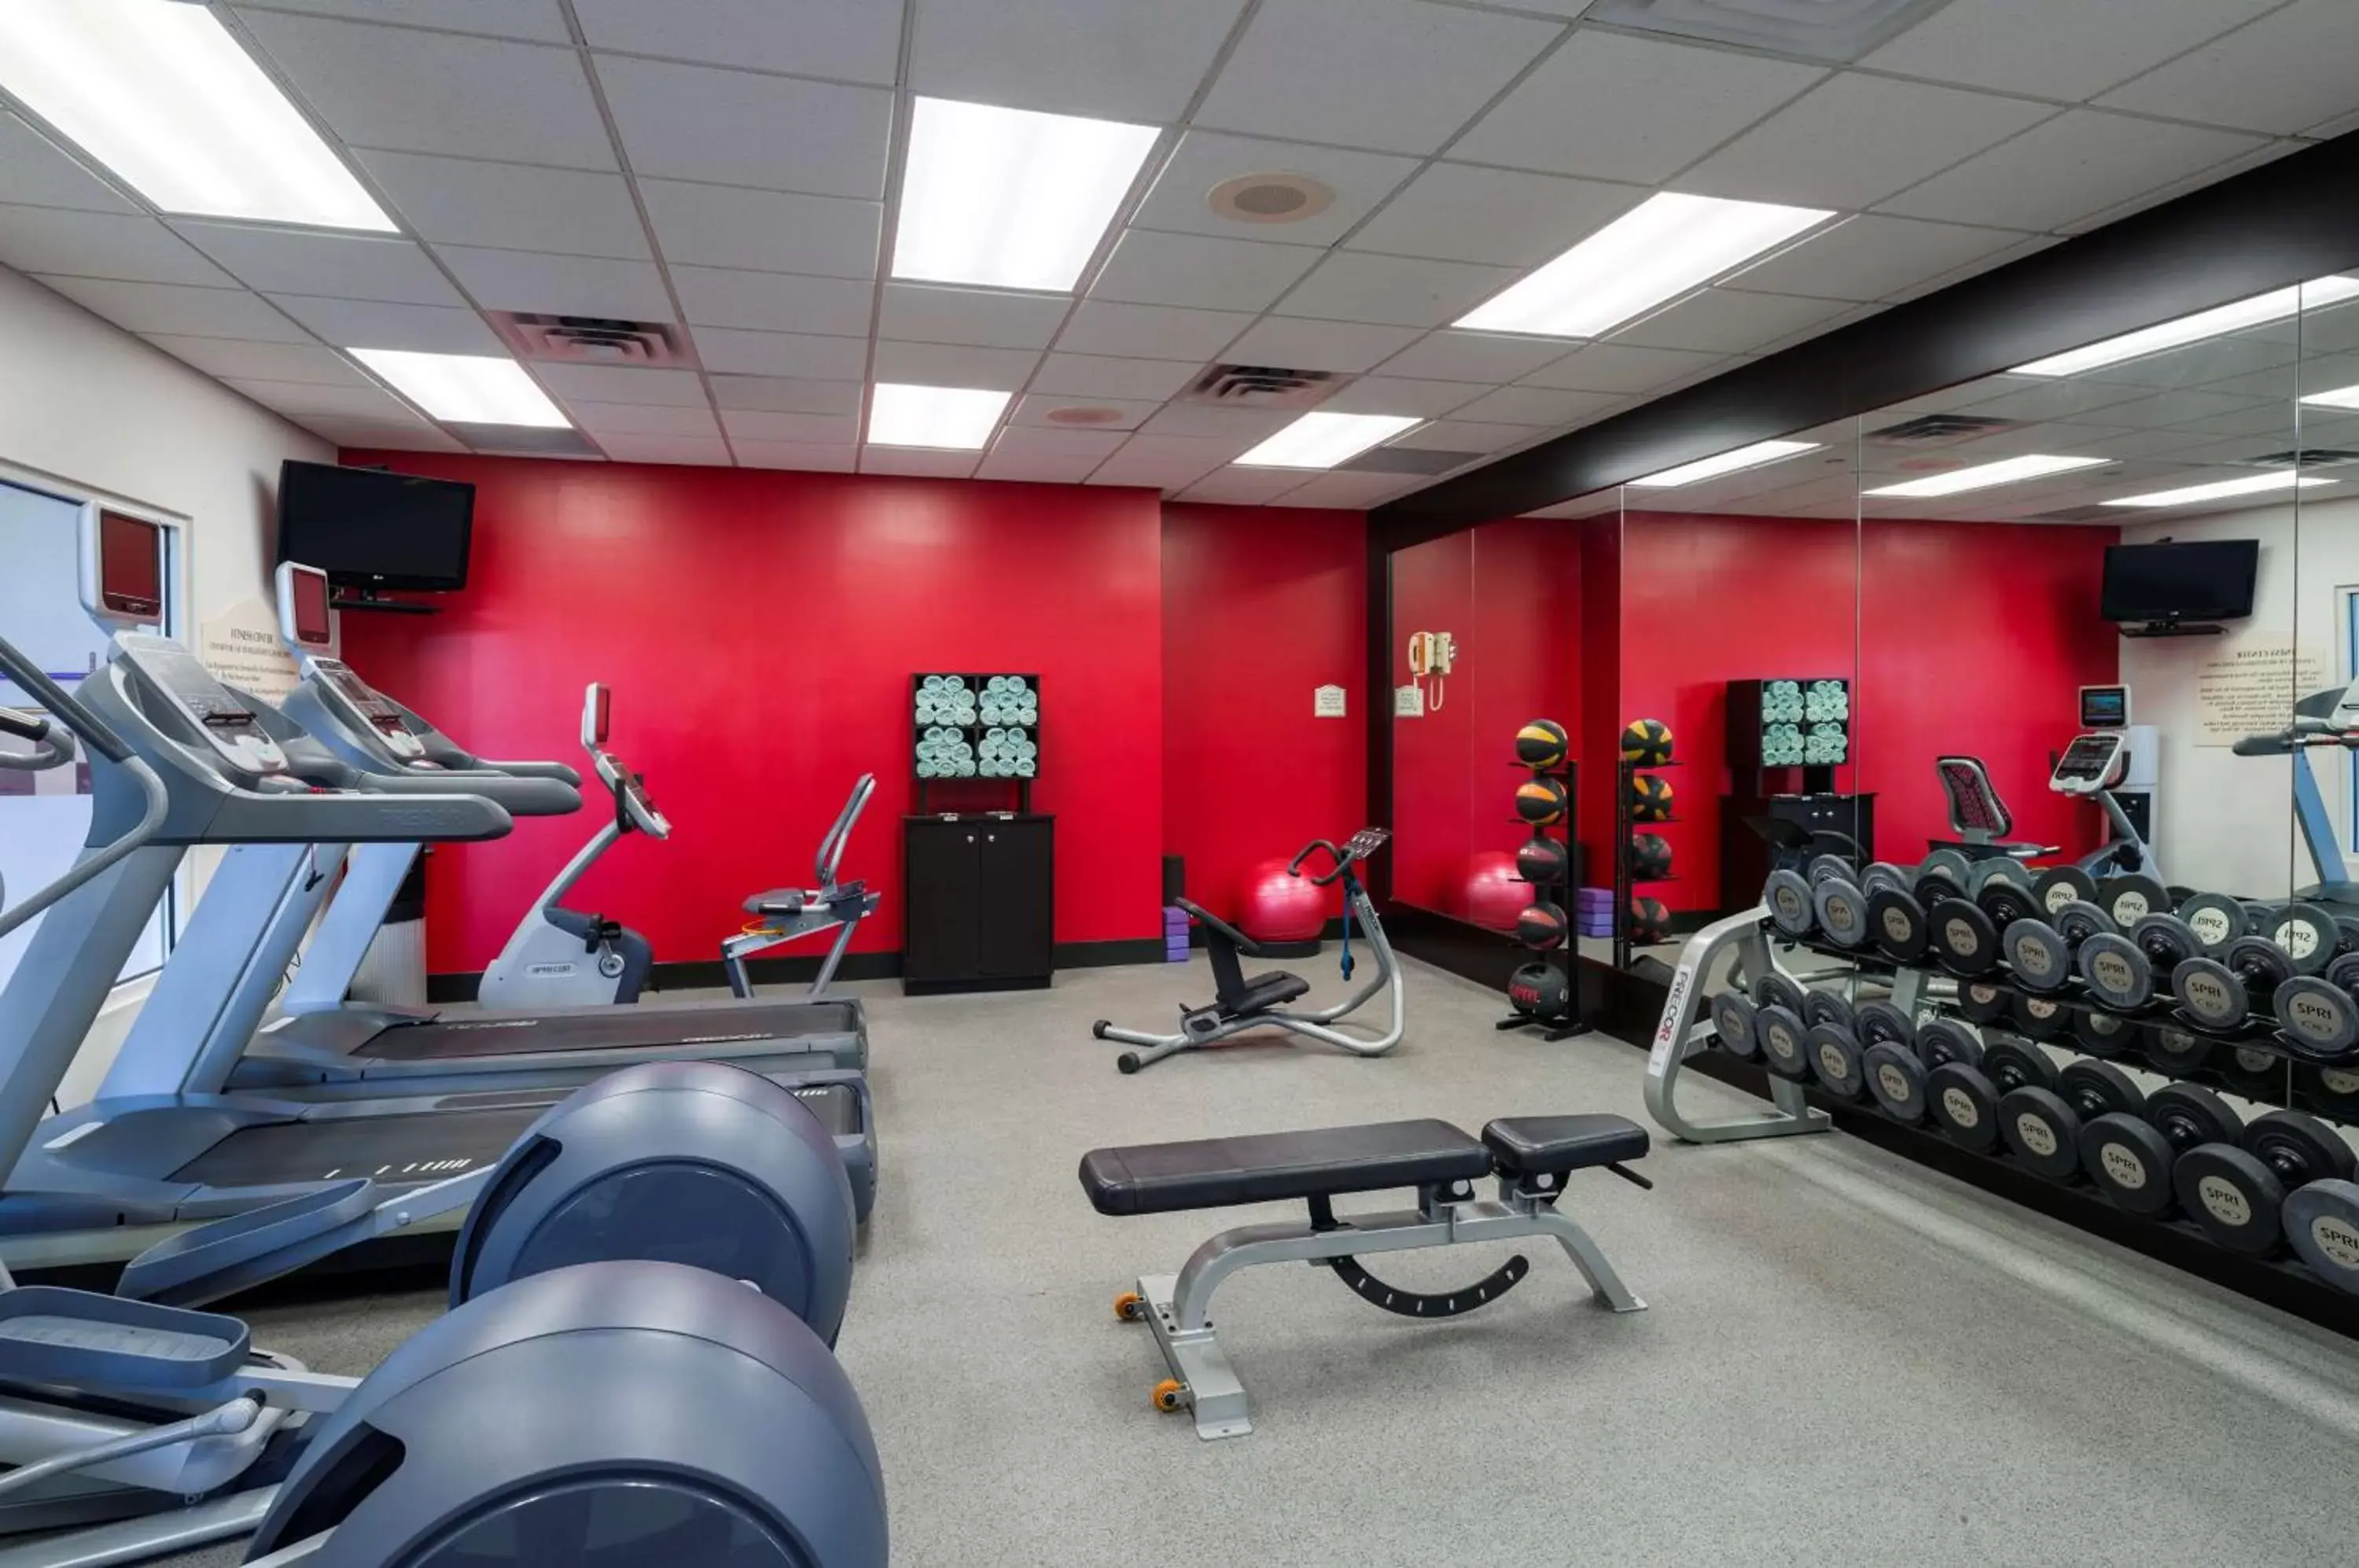 Fitness centre/facilities, Fitness Center/Facilities in Hilton Garden Inn Edison/Raritan Center